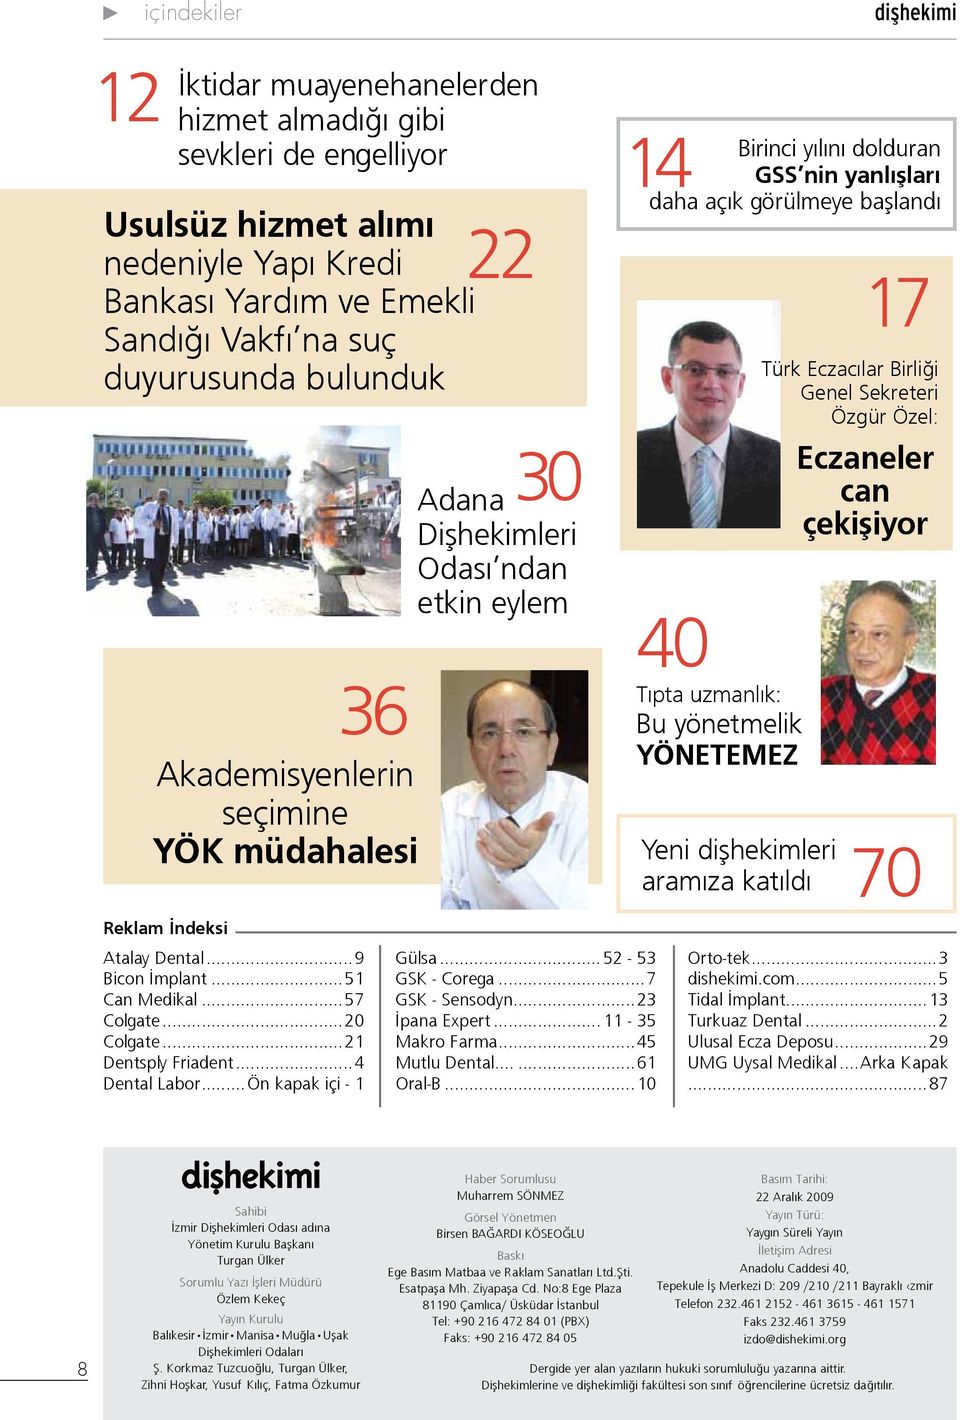 görülmeye başlandı Yeni dişhekimleri aramıza katıldı 17 Türk Eczacılar Birliği Genel Sekreteri Özgür Özel: Eczaneler can çekişiyor 70 Reklam İndeksi Atalay Dental...9 Bicon İmplant...51 Can Medikal.